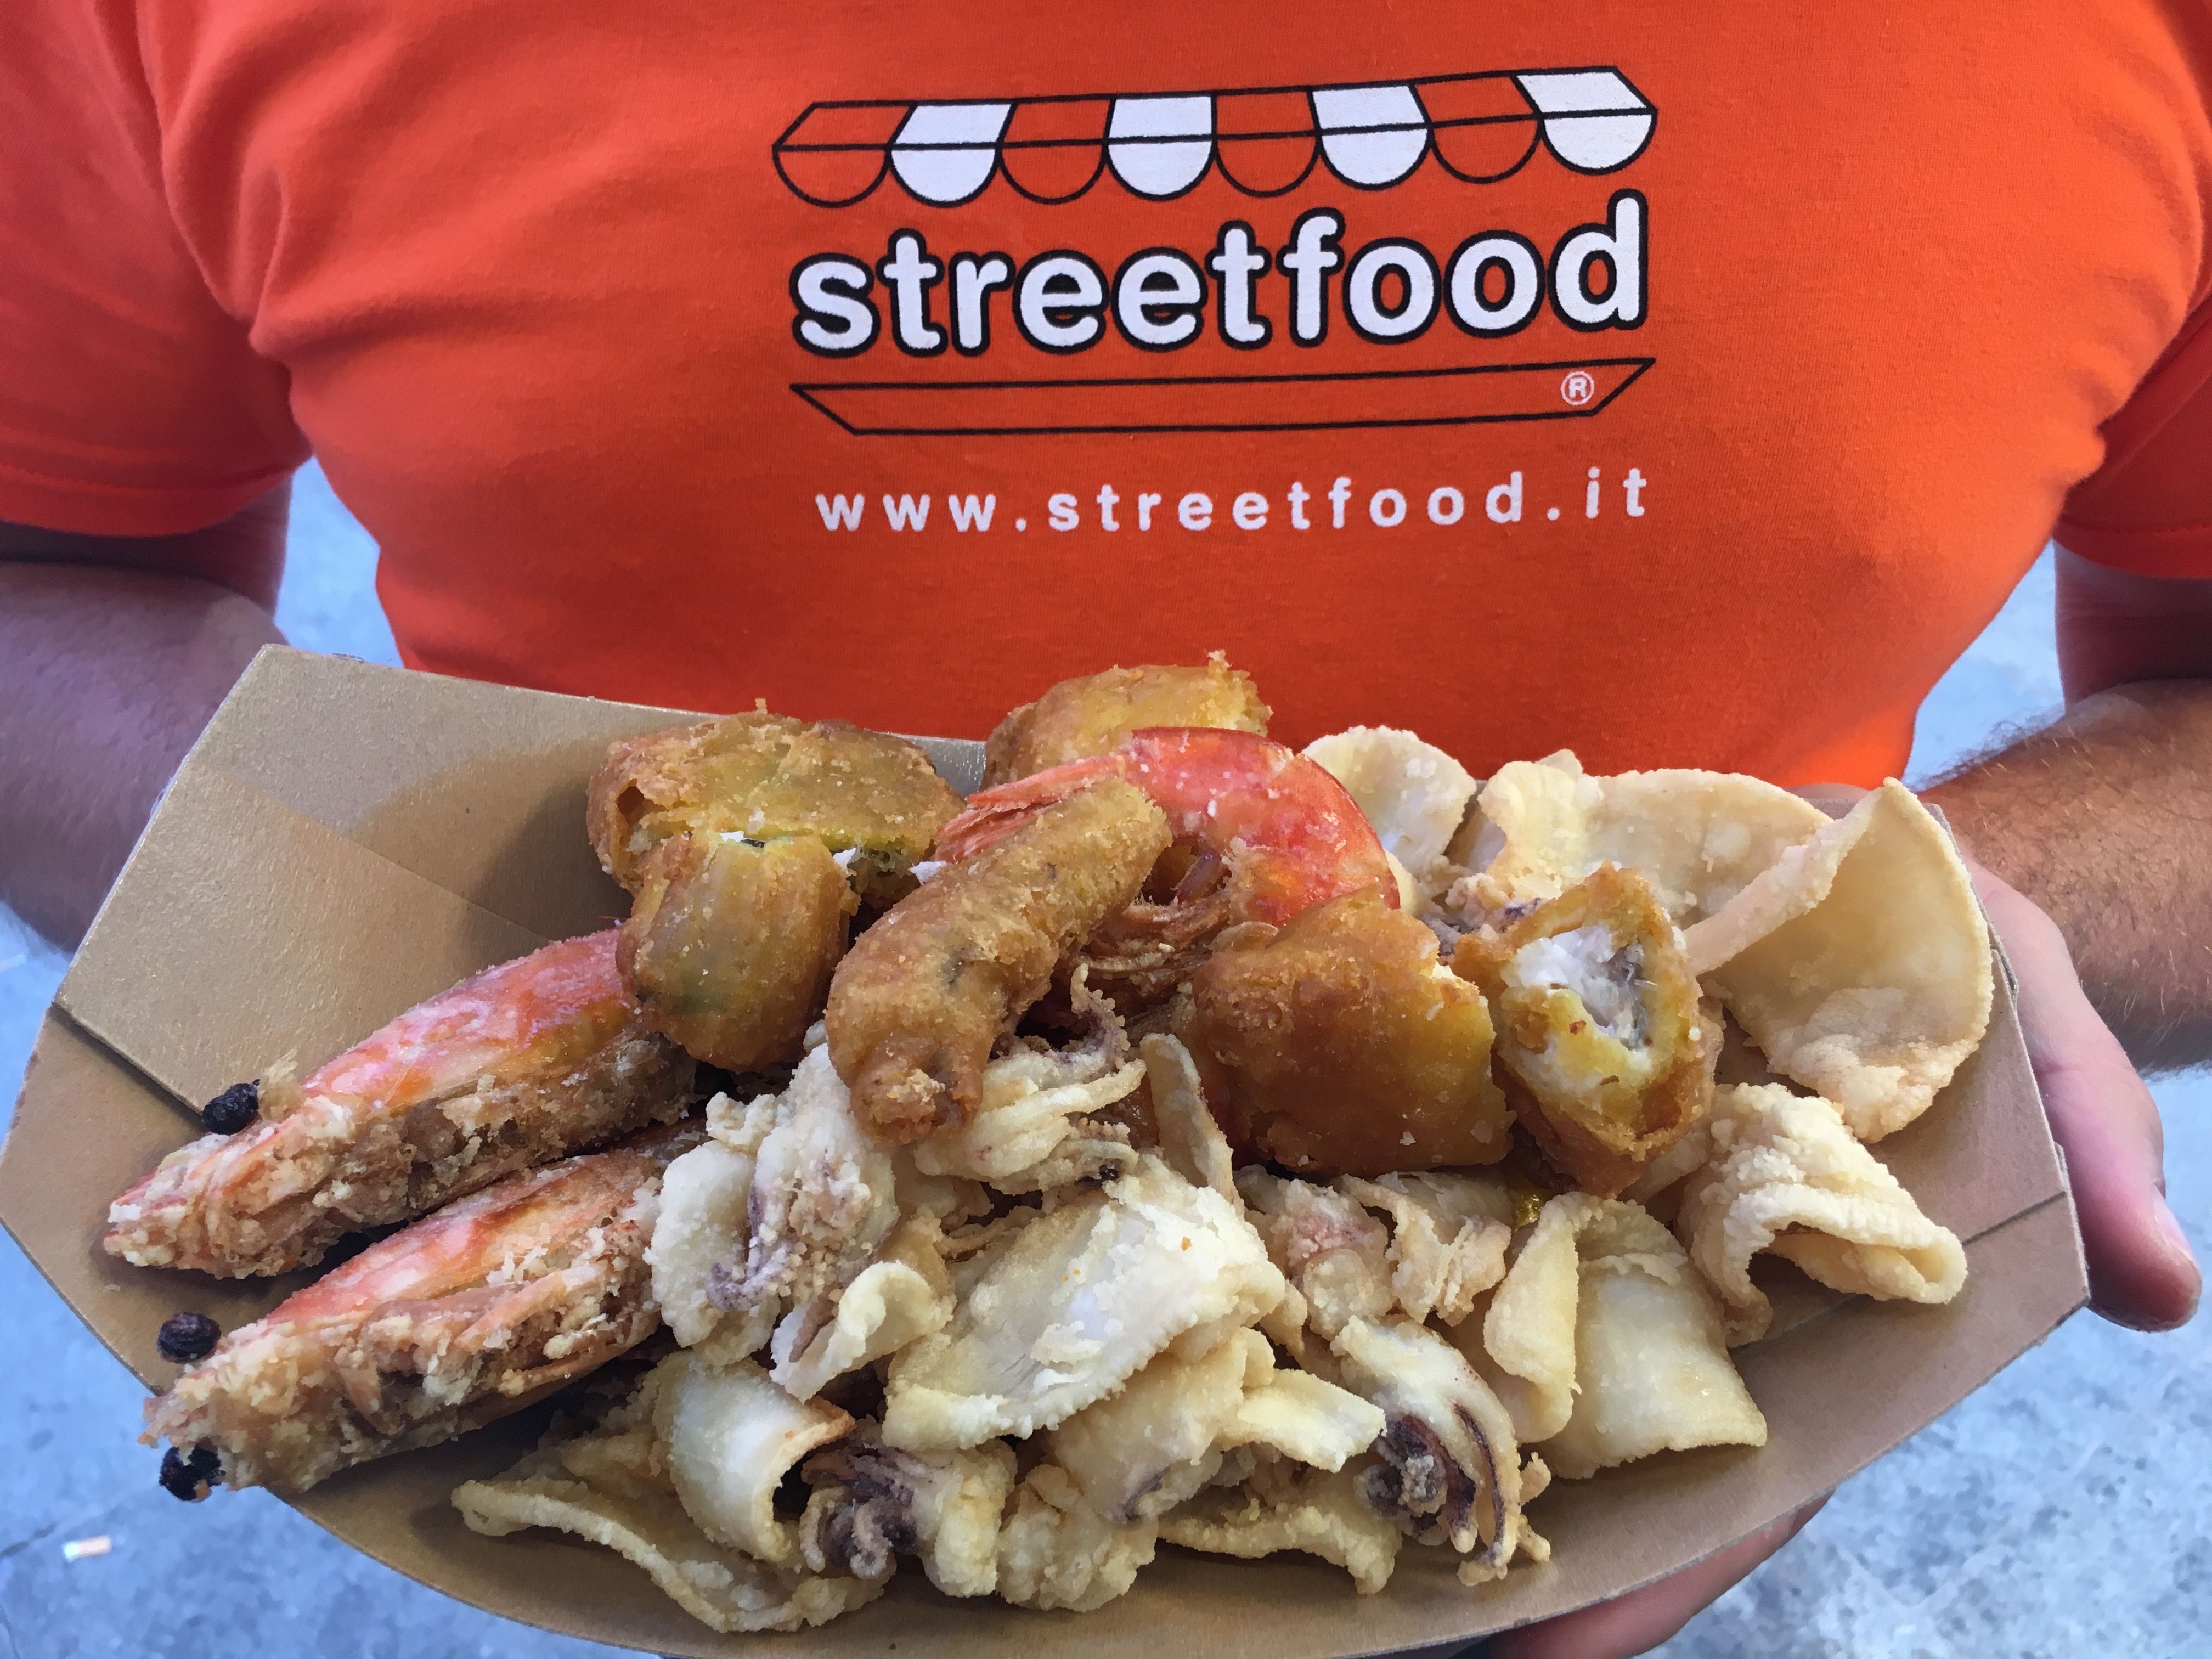 Torna Streetfood al  “Pertini” per la terza edizione dell’evento